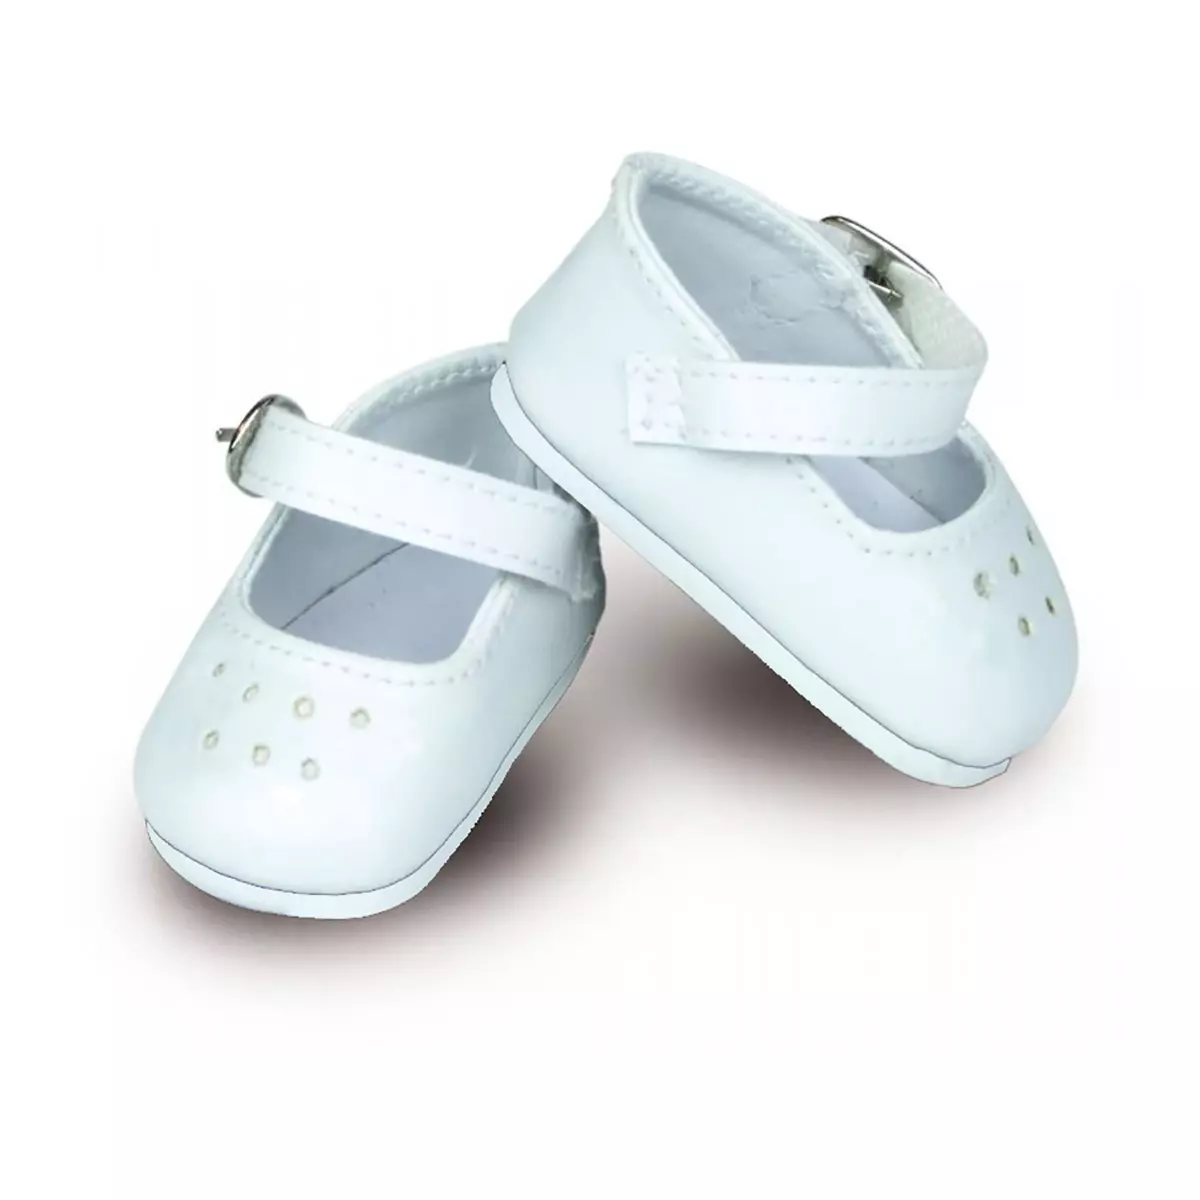 PETIT COLLIN Accessoires pour poupées Minouche 34 cm : Chaussures ballerines à bride coloris blanc